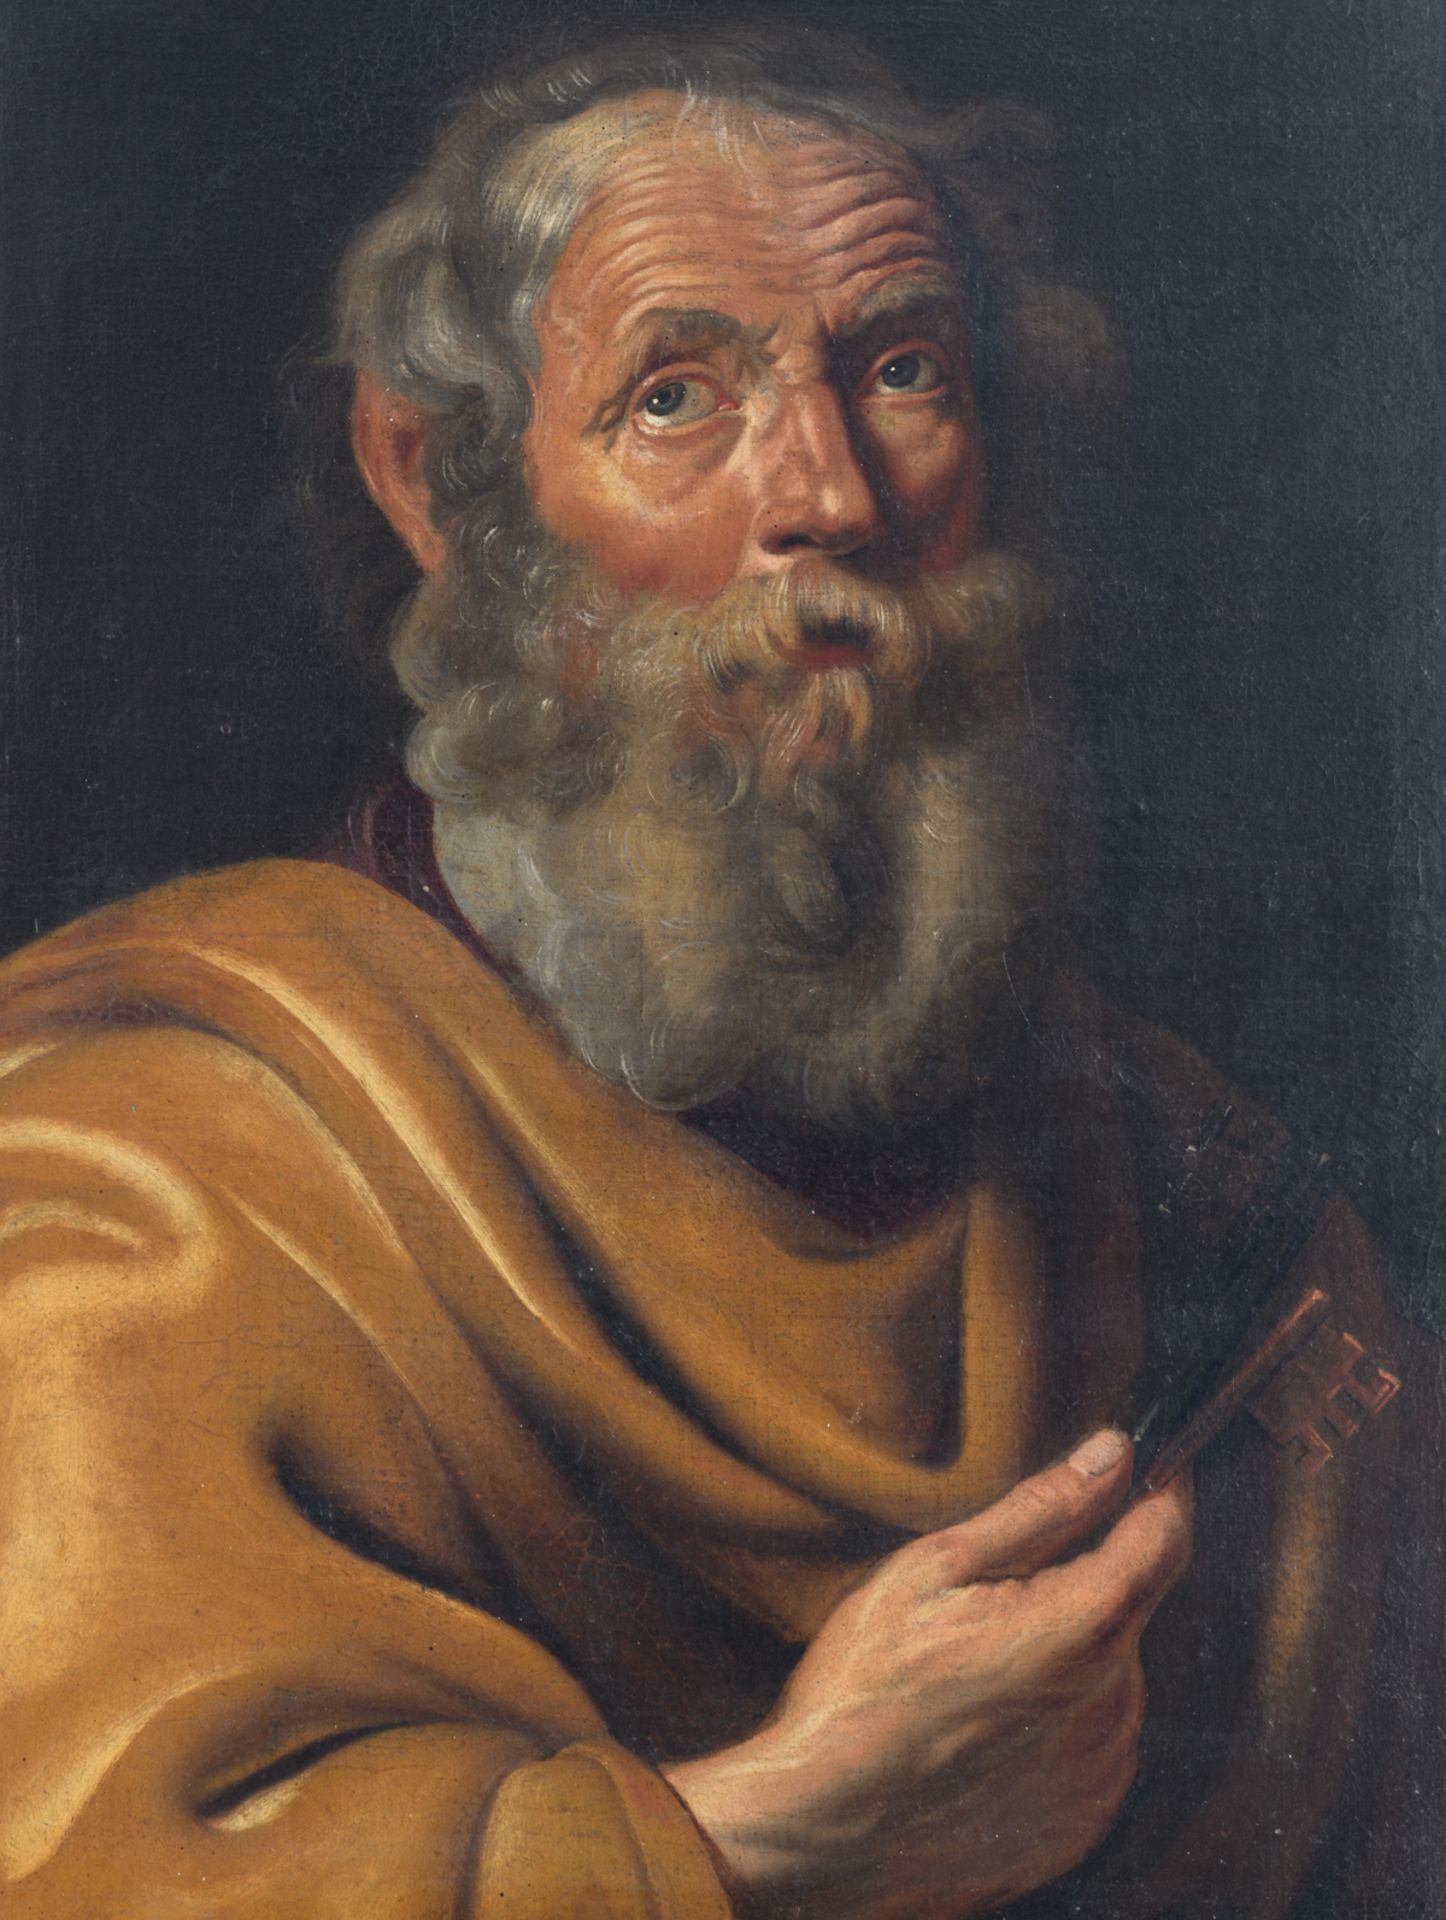 No visible signature, Saint Peter, oil on canvas, 17thC, 48 x 63,5 cm